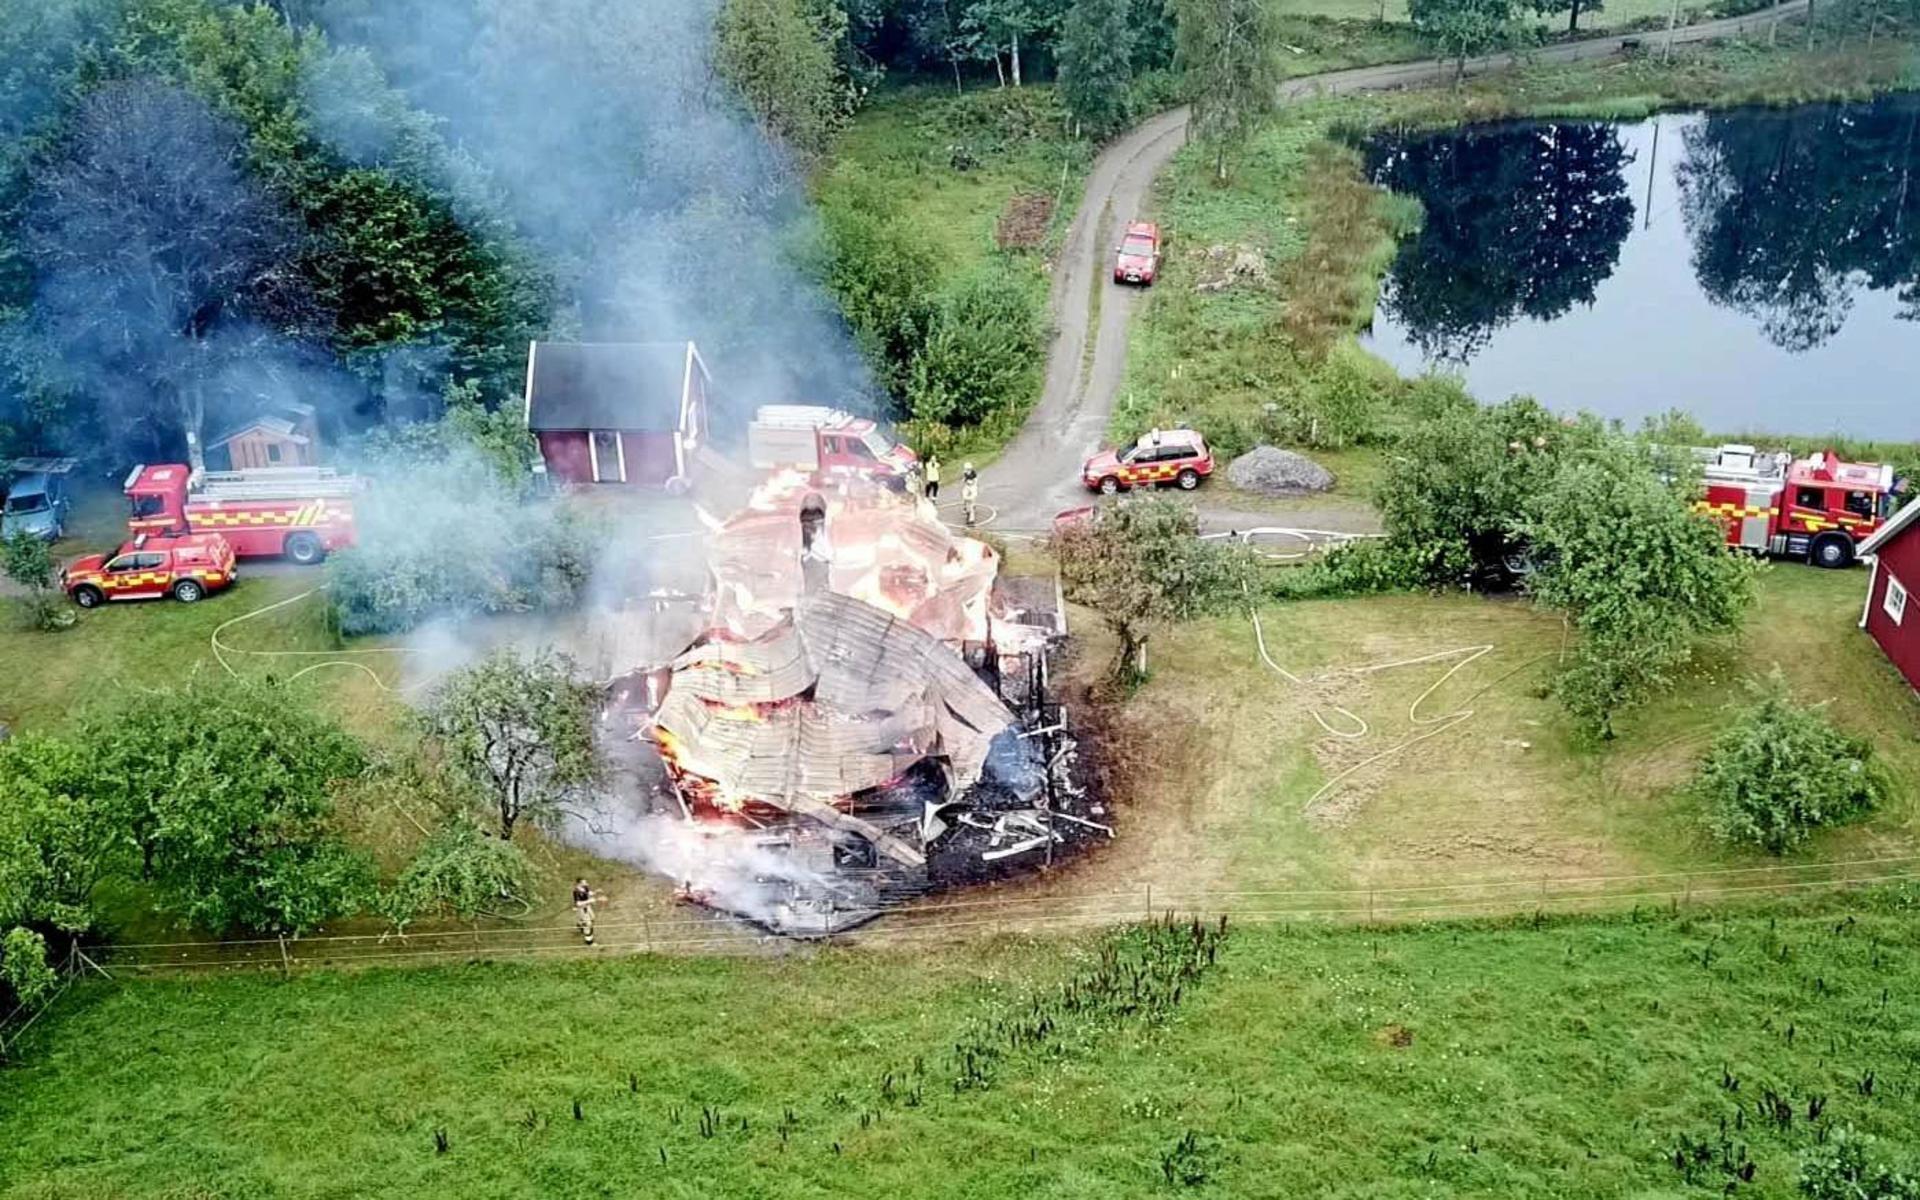 Natten den 20 augusti totalförstördes villan utanför Älvsered. En kvinna och en man misstänks för att ha anlagt branden. De inblandade ska ha en relation sedan tidigare. 